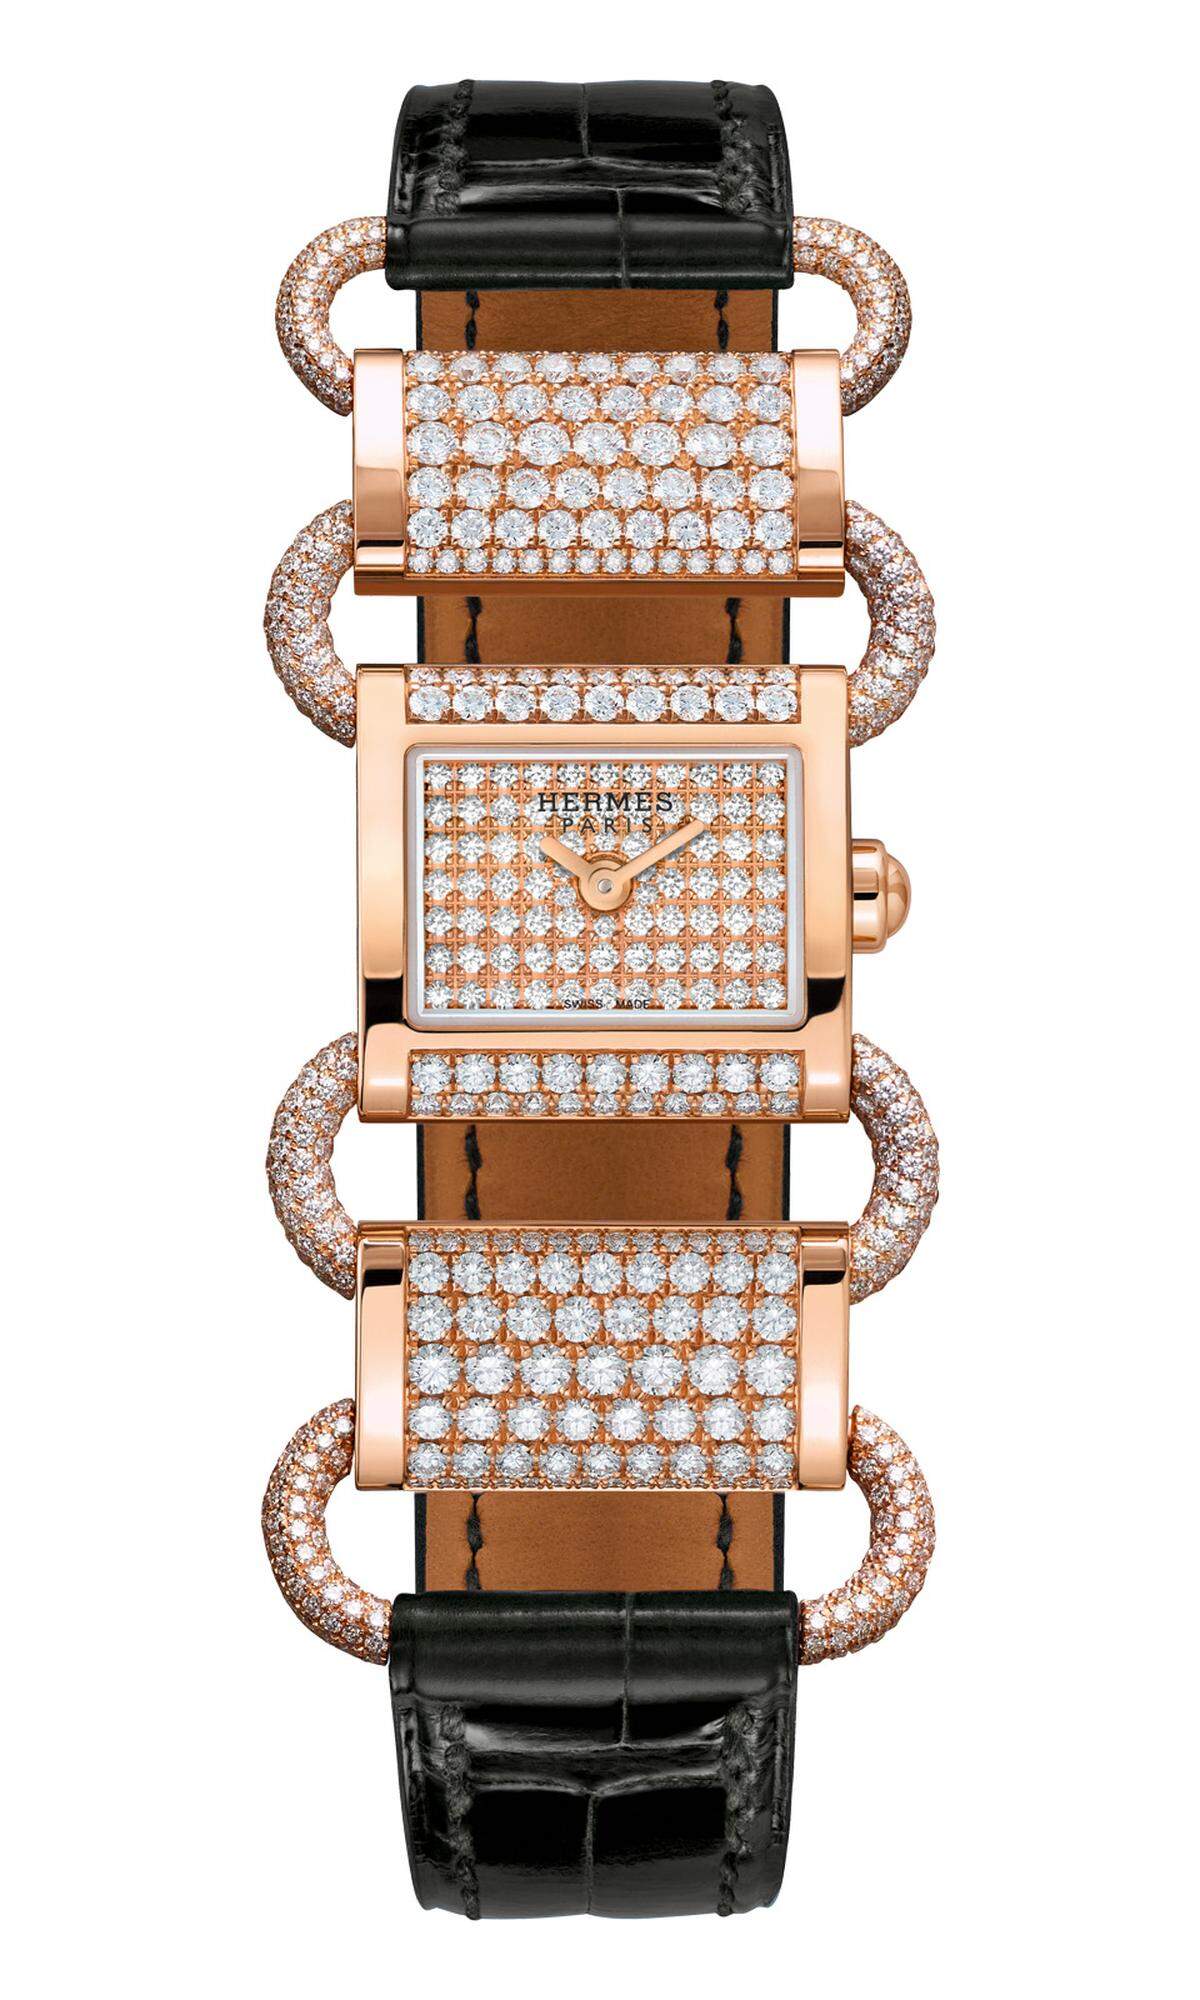 Seit 40 Jahren sitzt Hermès auch bei Uhren fest im Sattel. Dieses Jubiläum feiert die Luxusmarke mit der „Klikti“-Kollektion, die, für das Haus typisch, von der Welt des Reitsports inspiriert ist. Das durchbrochene Armband mit edelsteinbesetztem Zifferblatt erinnert auf elegante Weise an Pferdegeschirr.